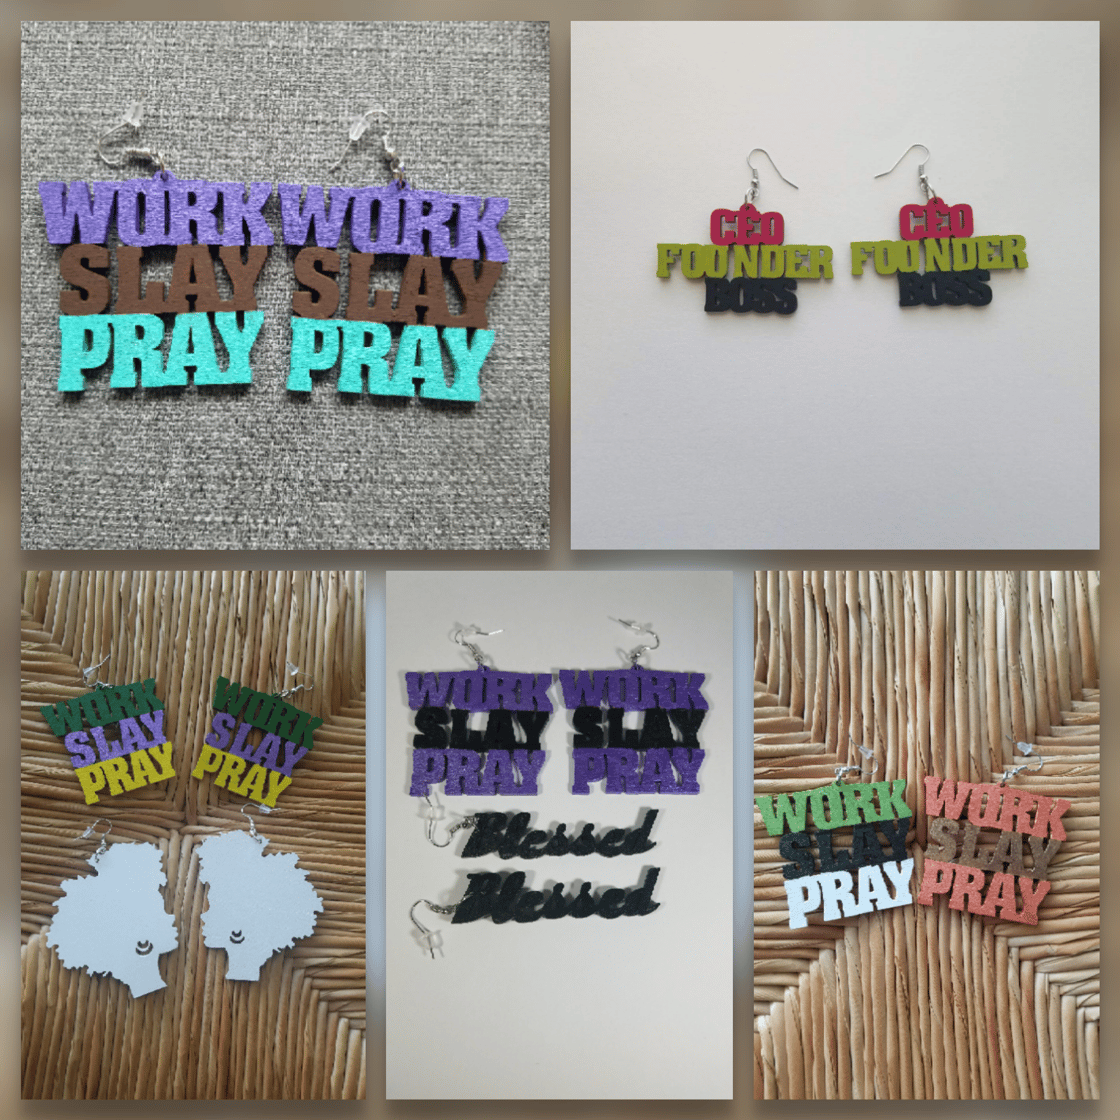 Image of Work Slay Pray Earrings